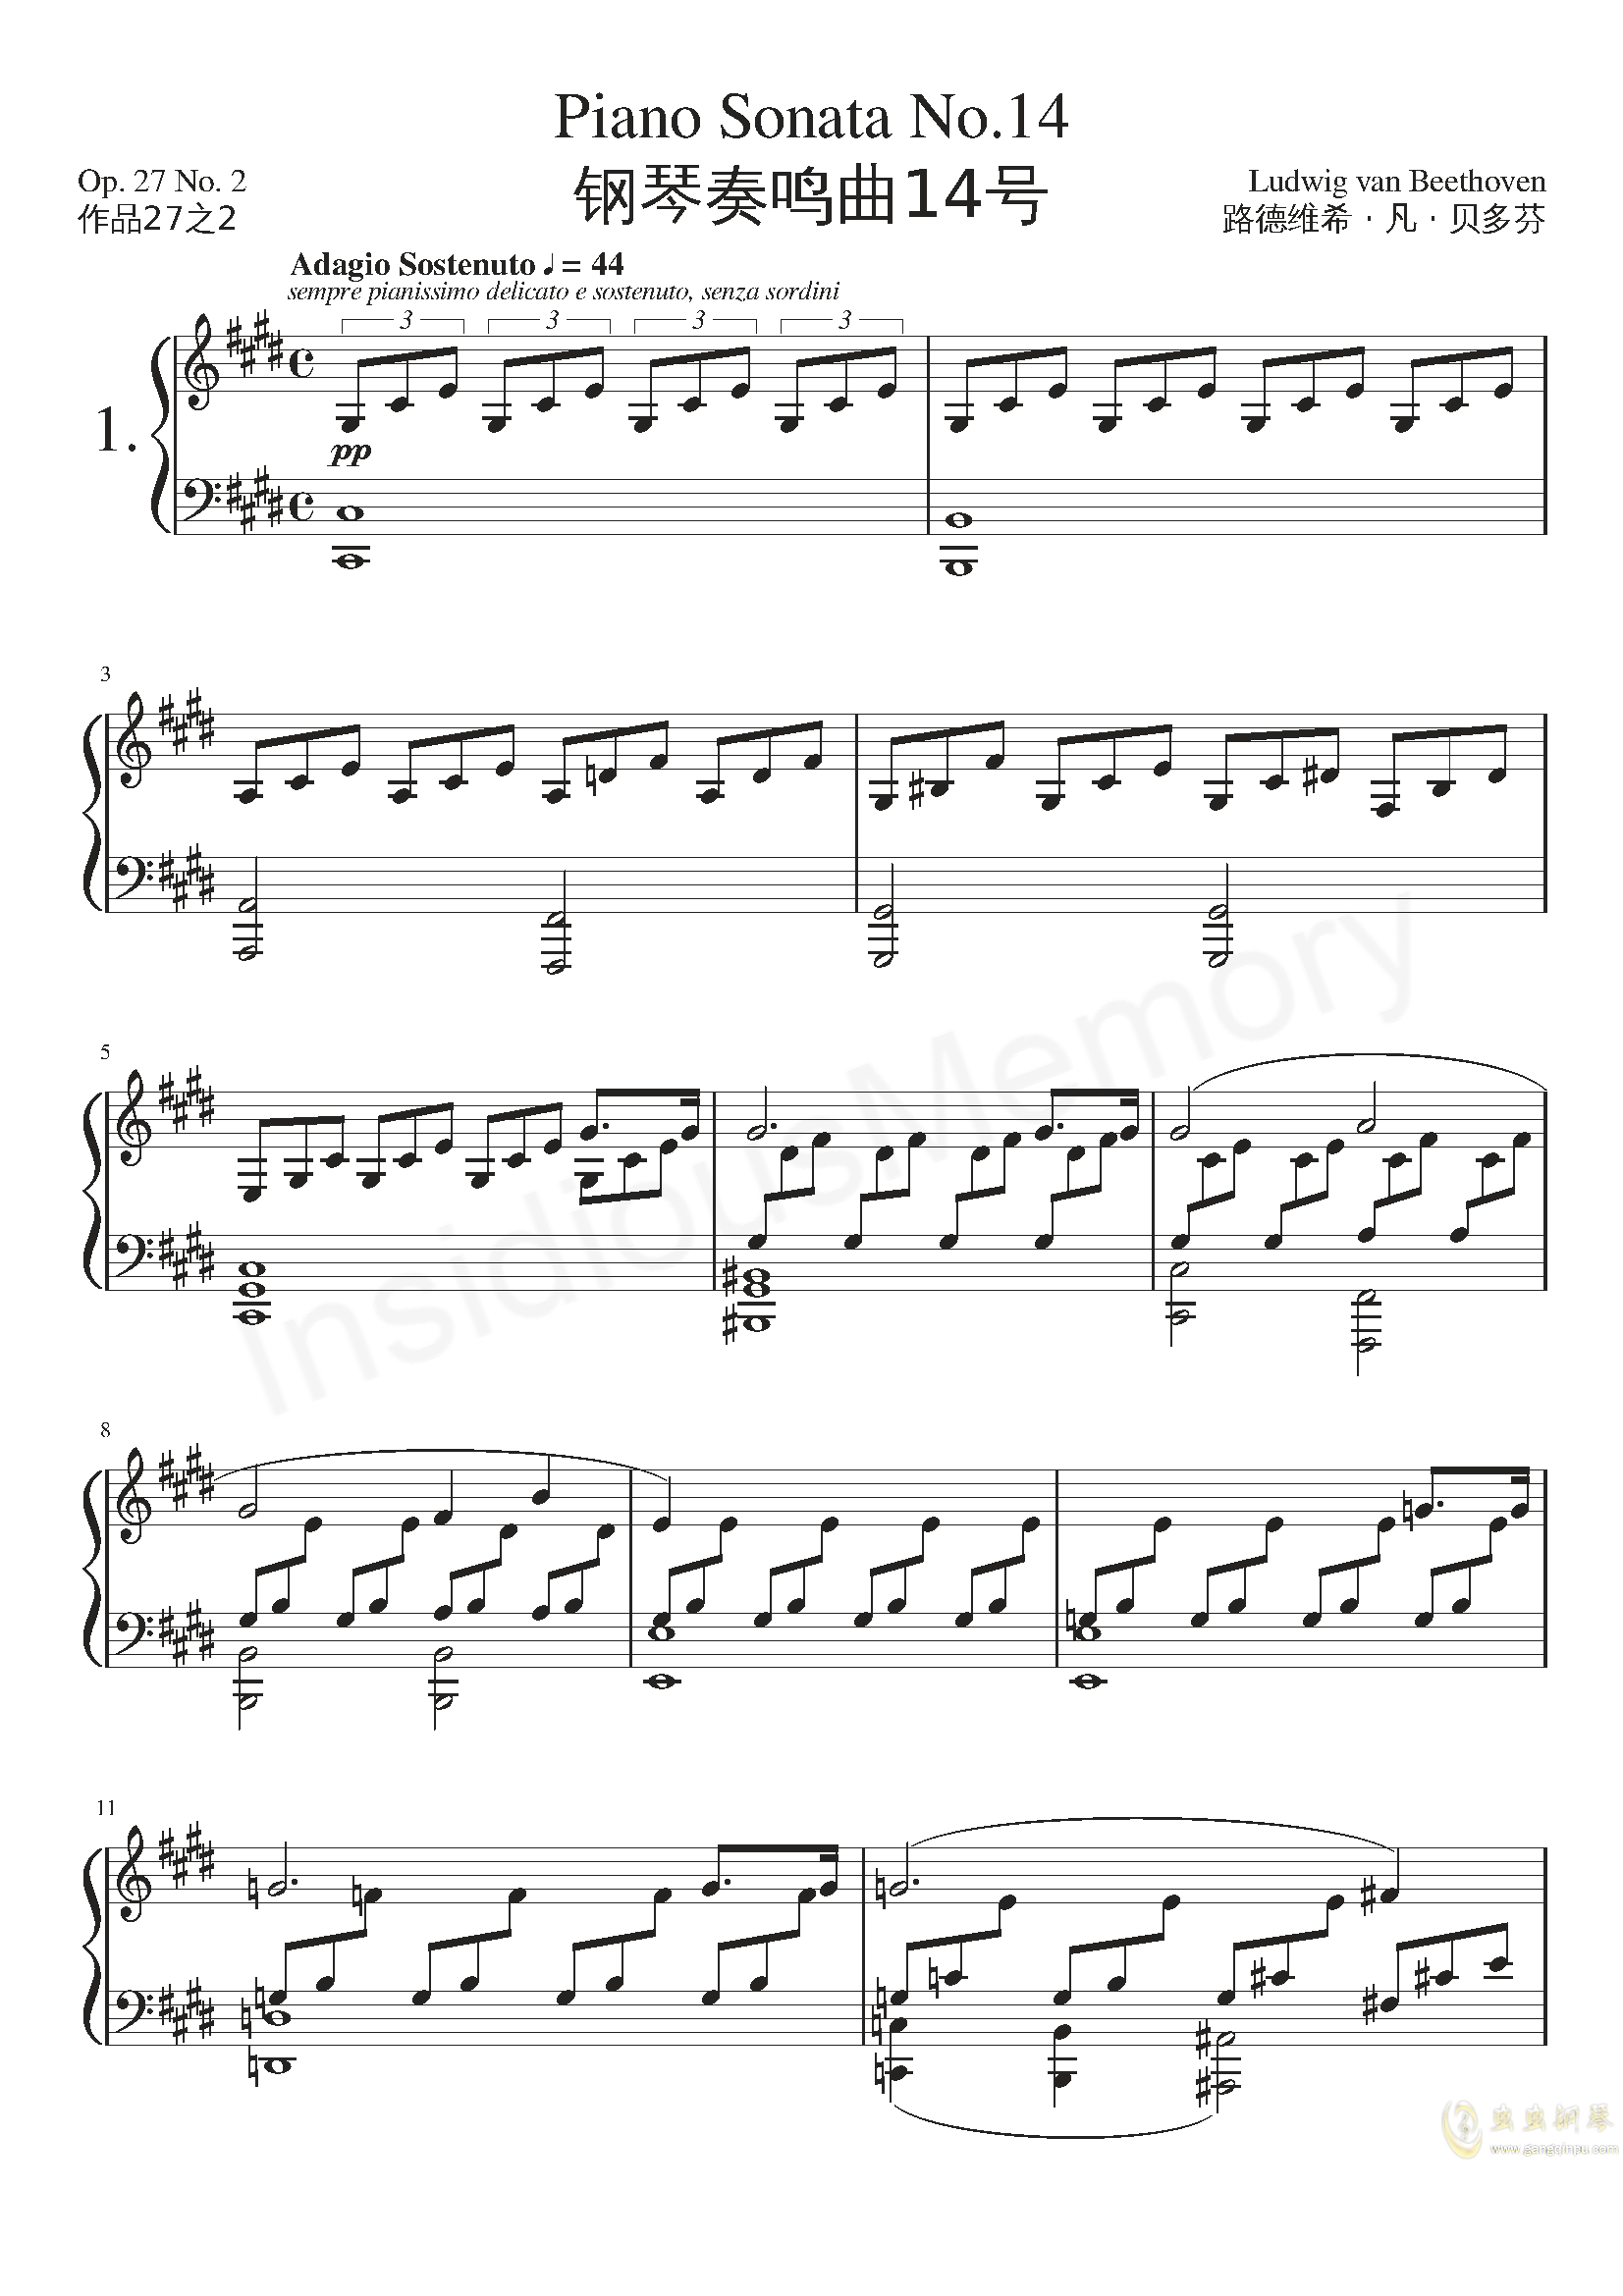 贝多芬“月光”钢琴奏鸣曲第三乐章Op.27 No.2钢琴谱-贝多芬贝多芬“月光”奏鸣曲第三乐章钢琴谱-环球钢琴网